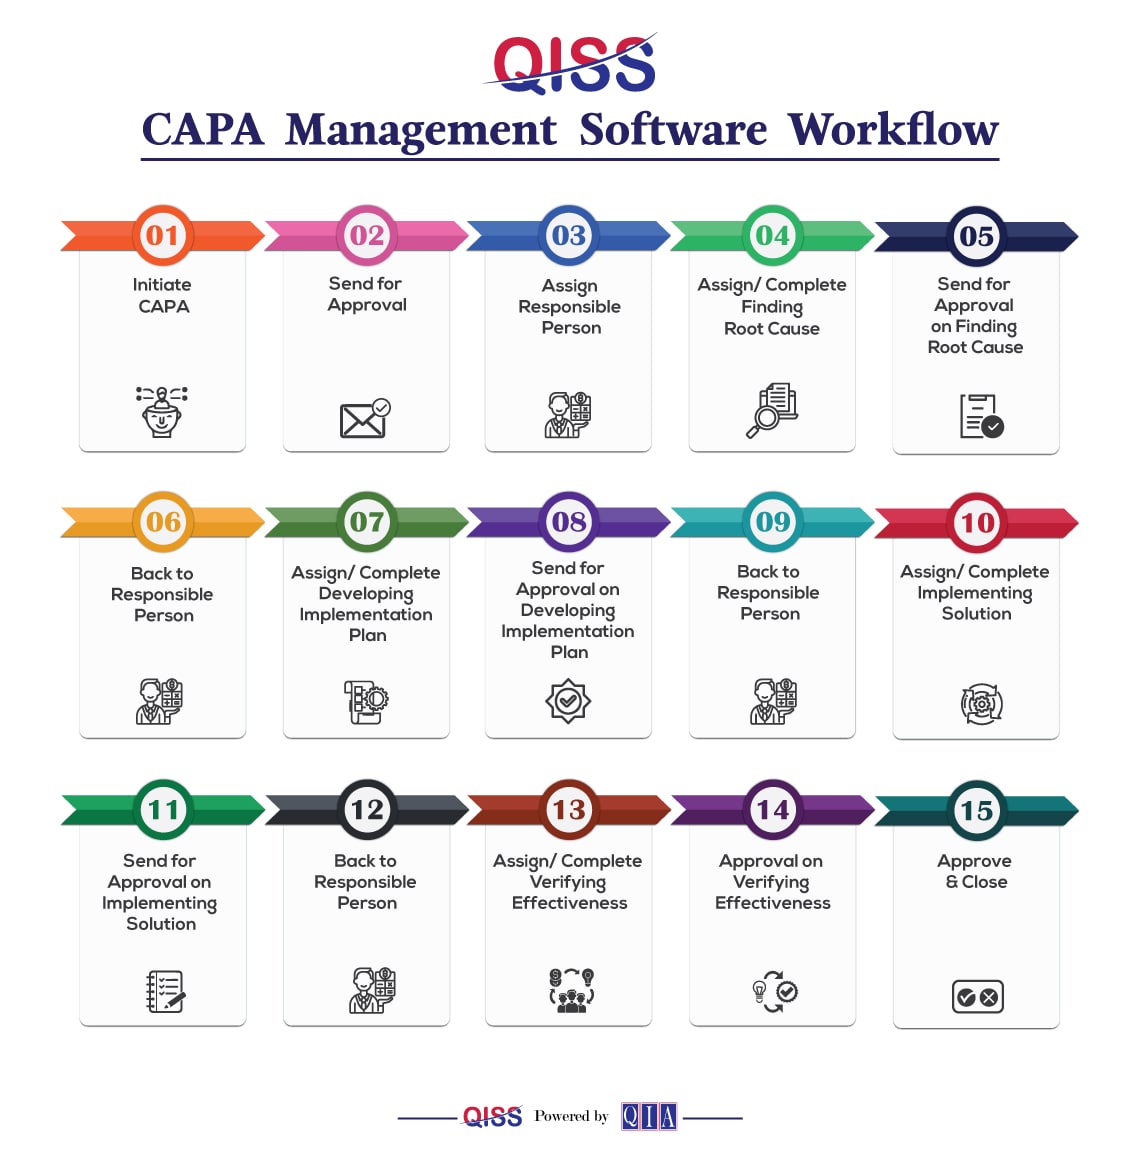 CAPA Management